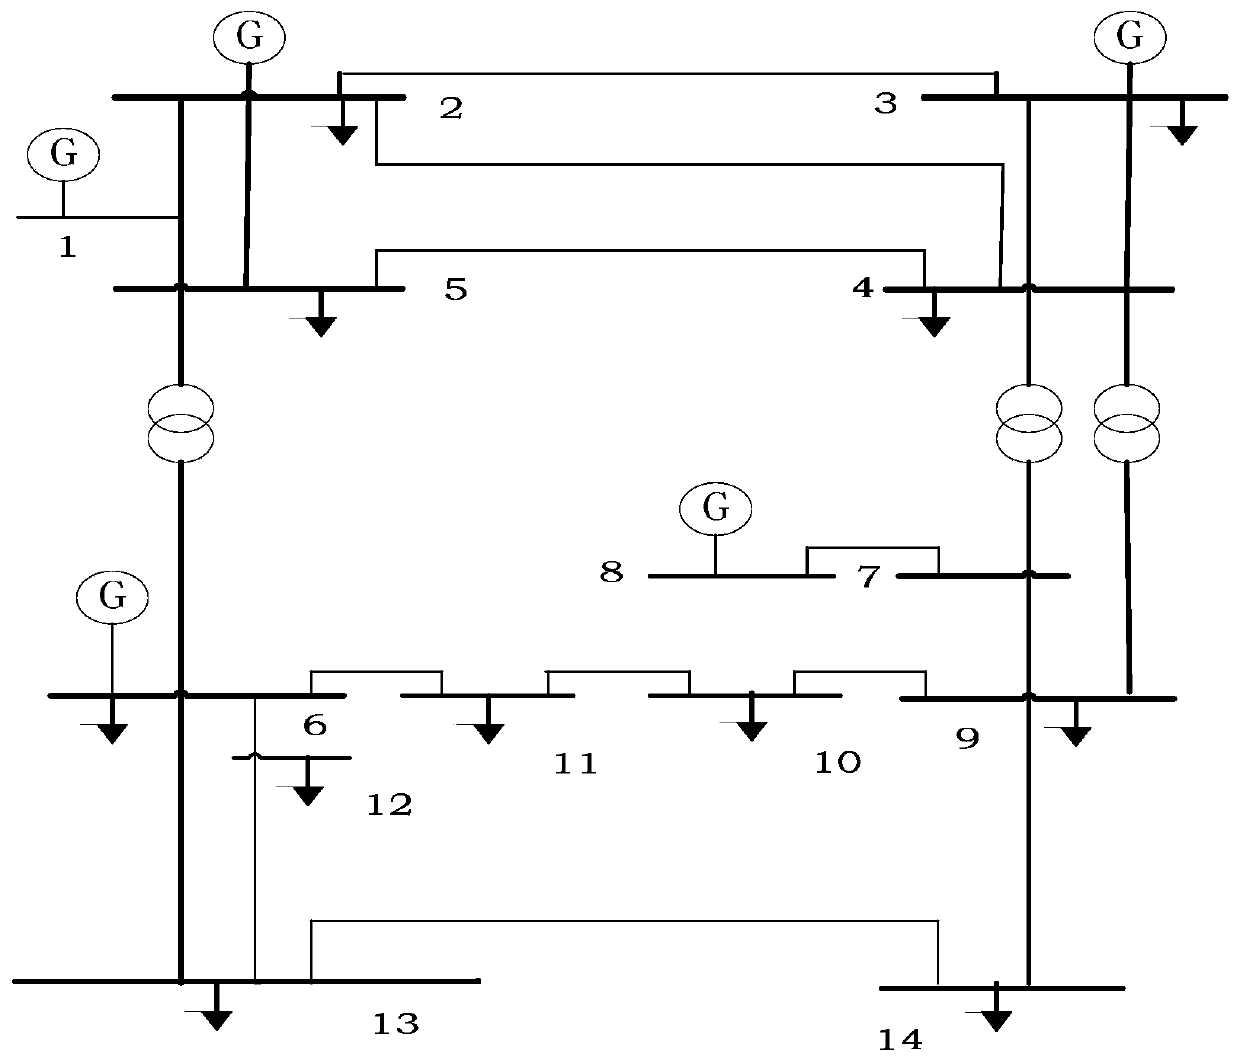 A Distributed Power Planning Method Based on Improved Orthogonal Optimization Swarm Intelligence Algorithm